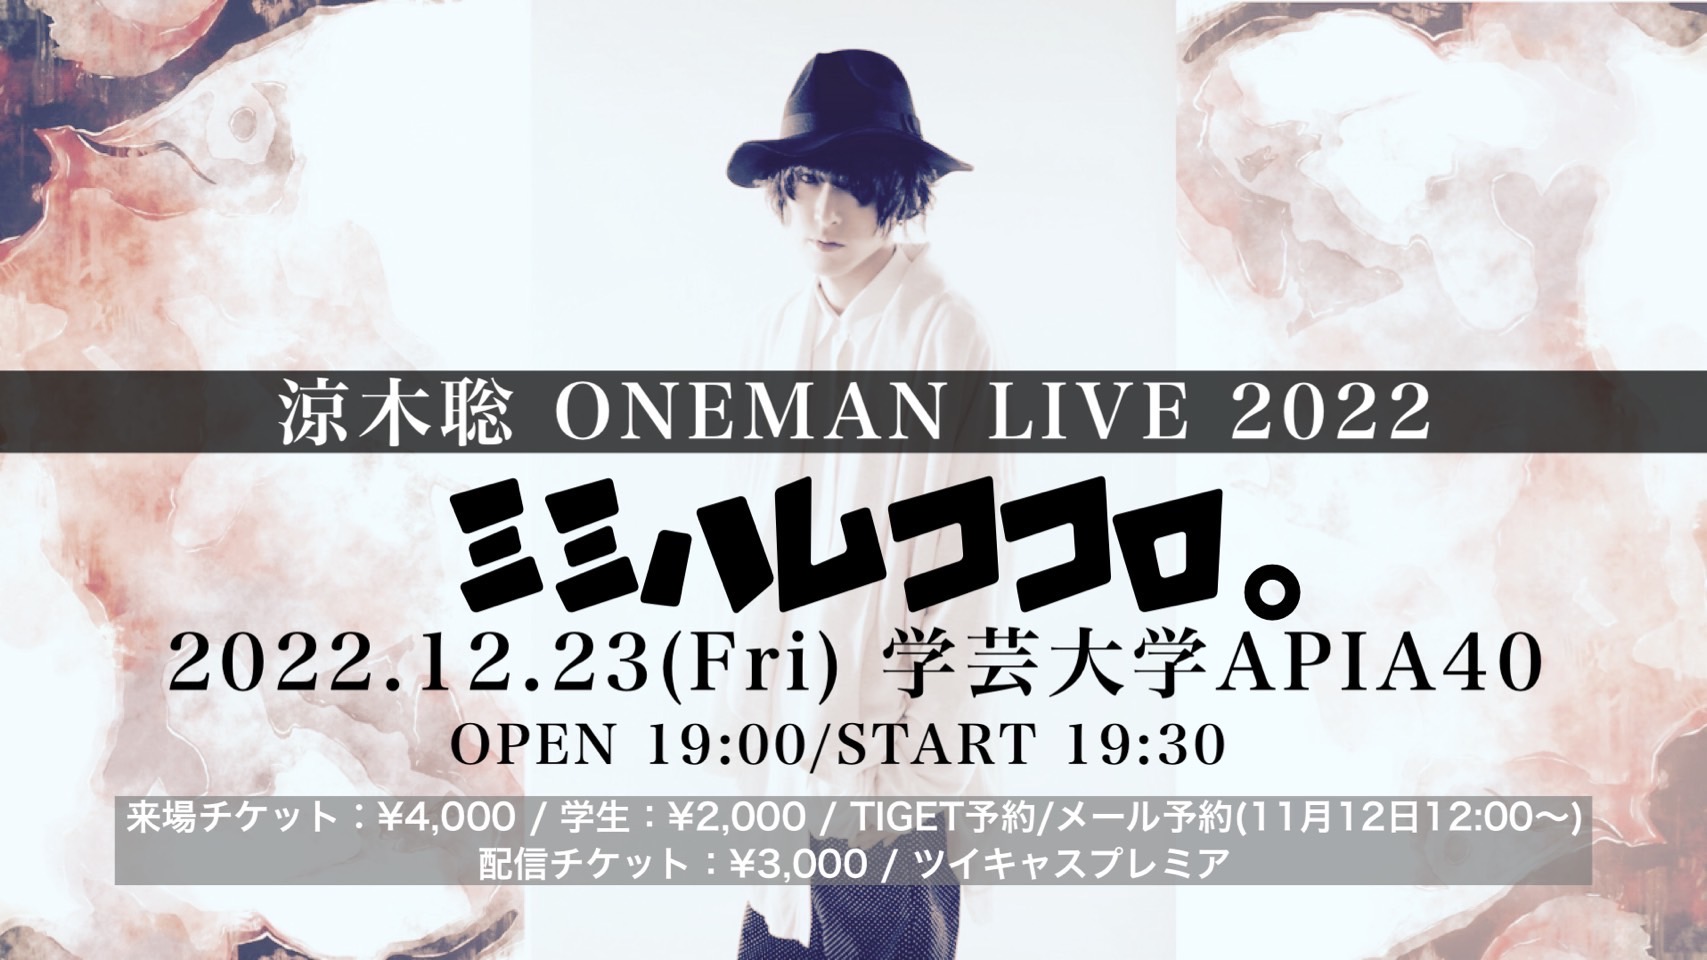 涼木聡 ONEMAN LIVE 2022「ミミハムココロ。」